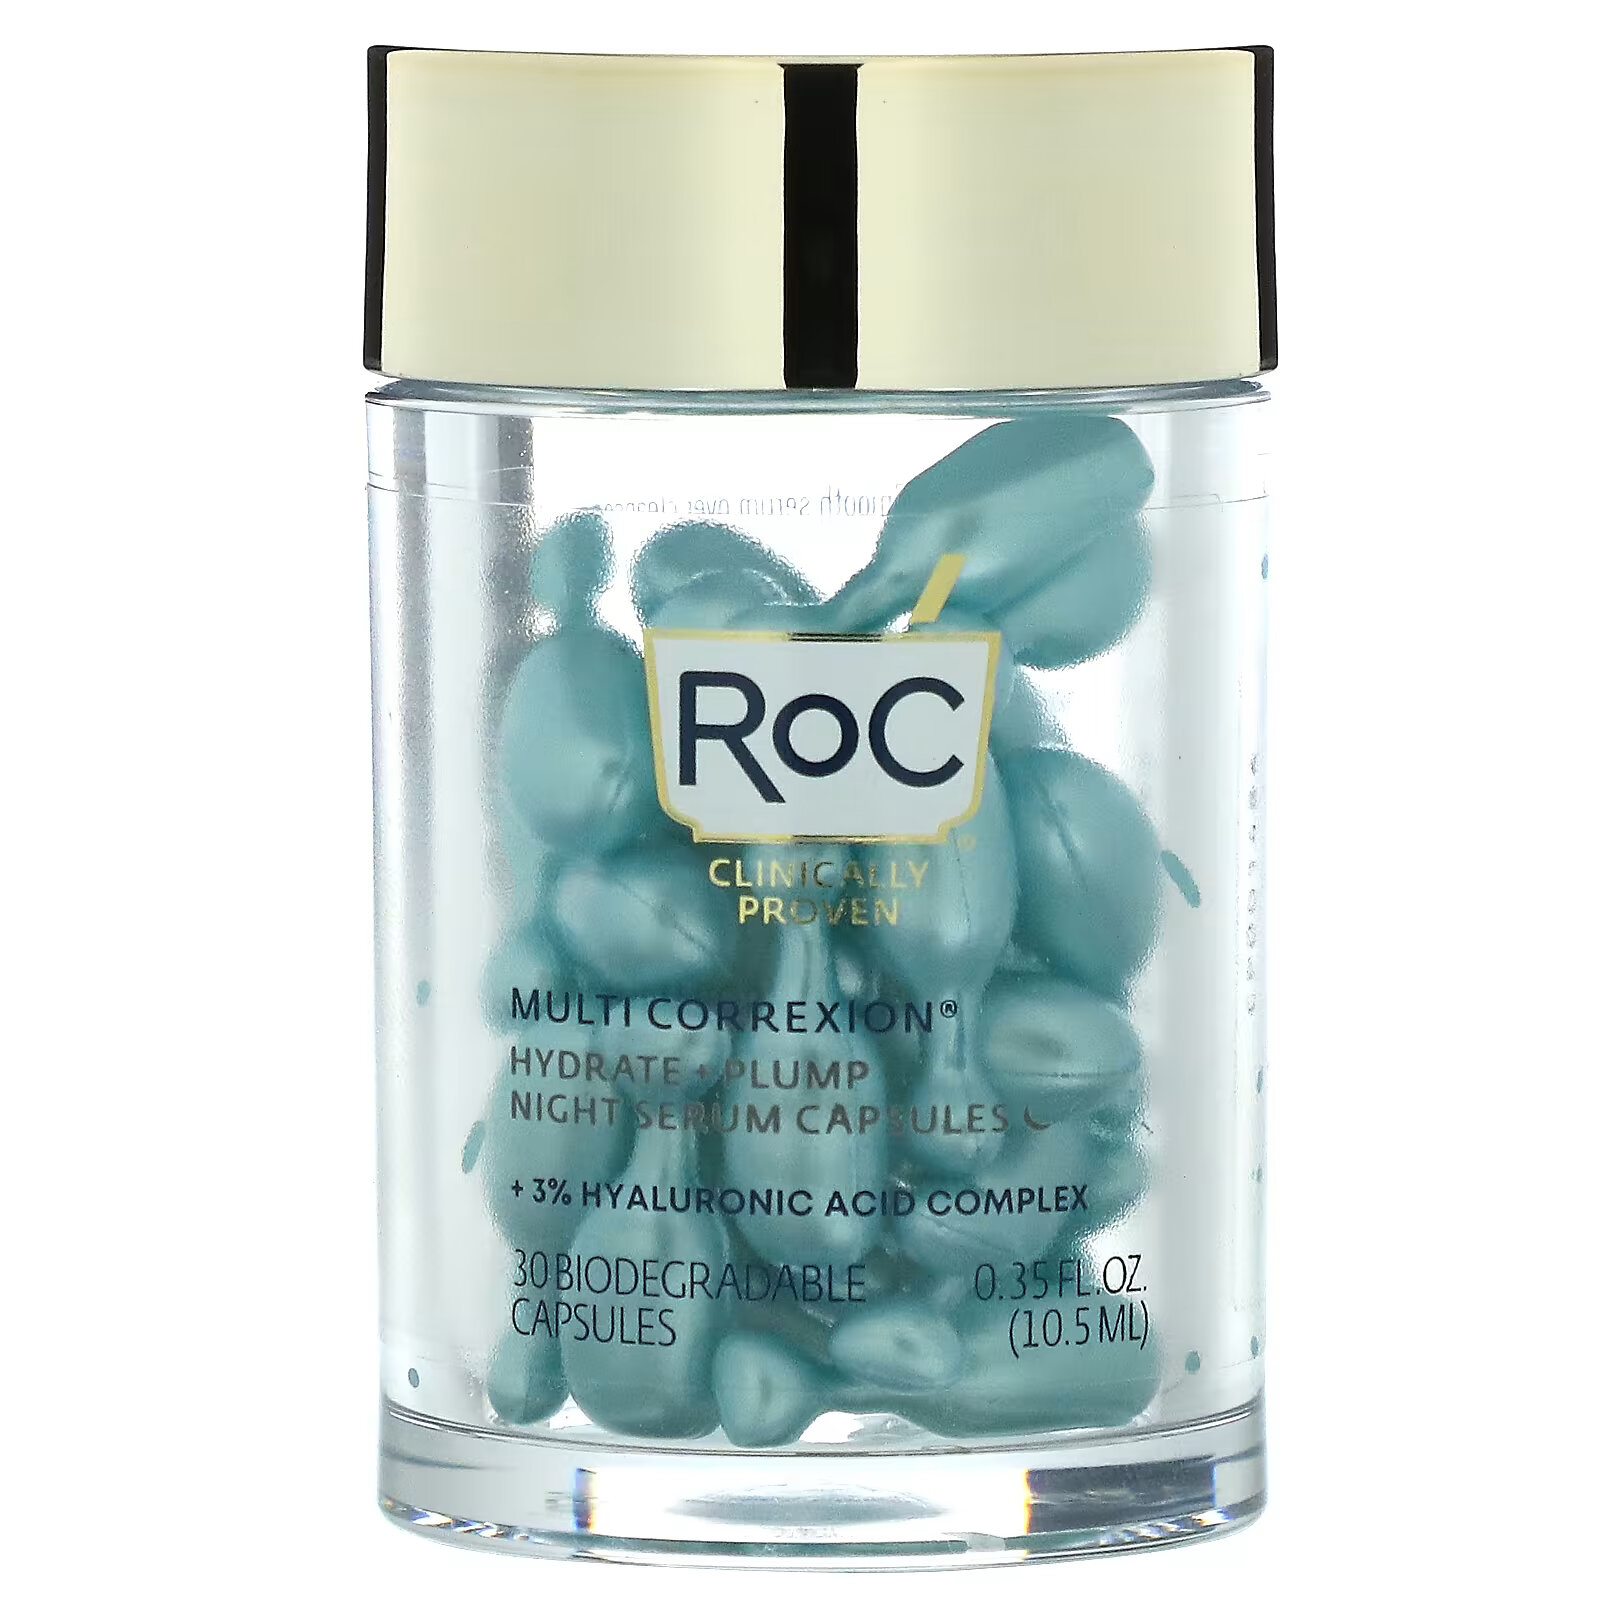 RoC, Multi Correxion, ночная сыворотка в капсулах, увлажнение и упругость, без аромата, 30 биоразлагаемых капсул roc разглаживающая ночная сыворотка с ретинолом 30 биоразлагаемых капсул